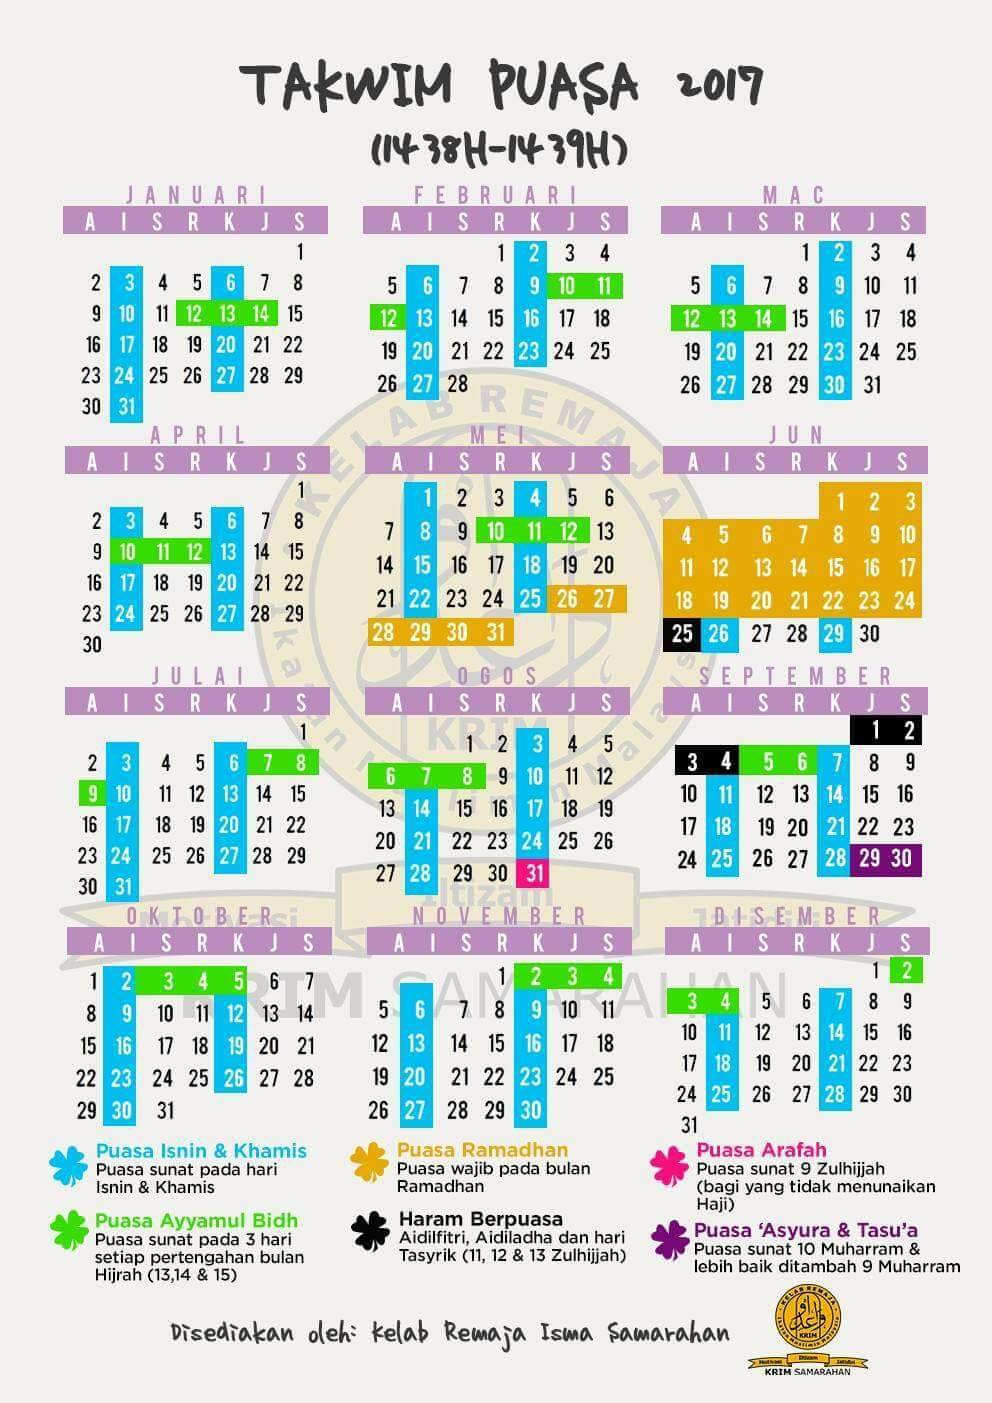 Kalendar Puasa Sunat Dan Wajib 2017